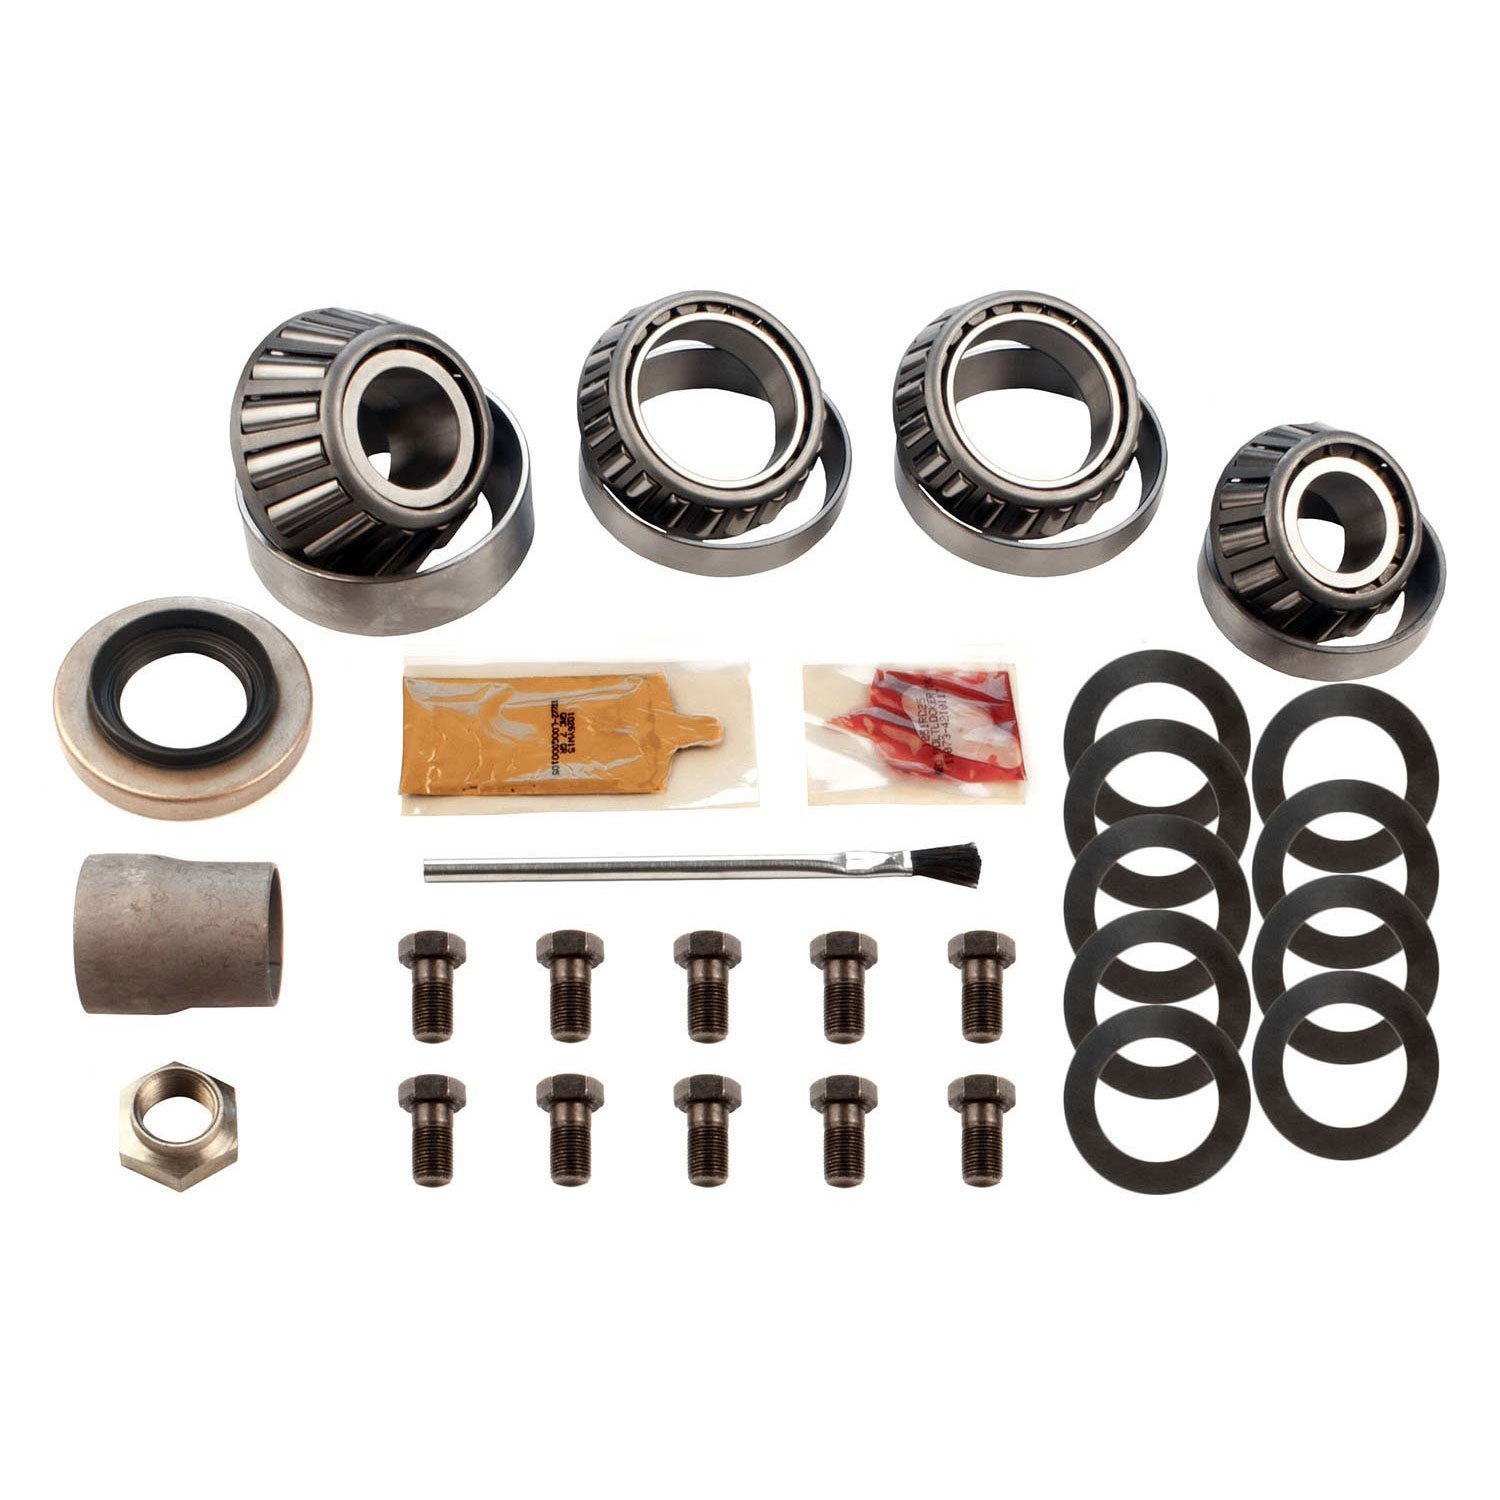 Differential Master Bearing Kit Toyota 8 in. - Timken Bearings